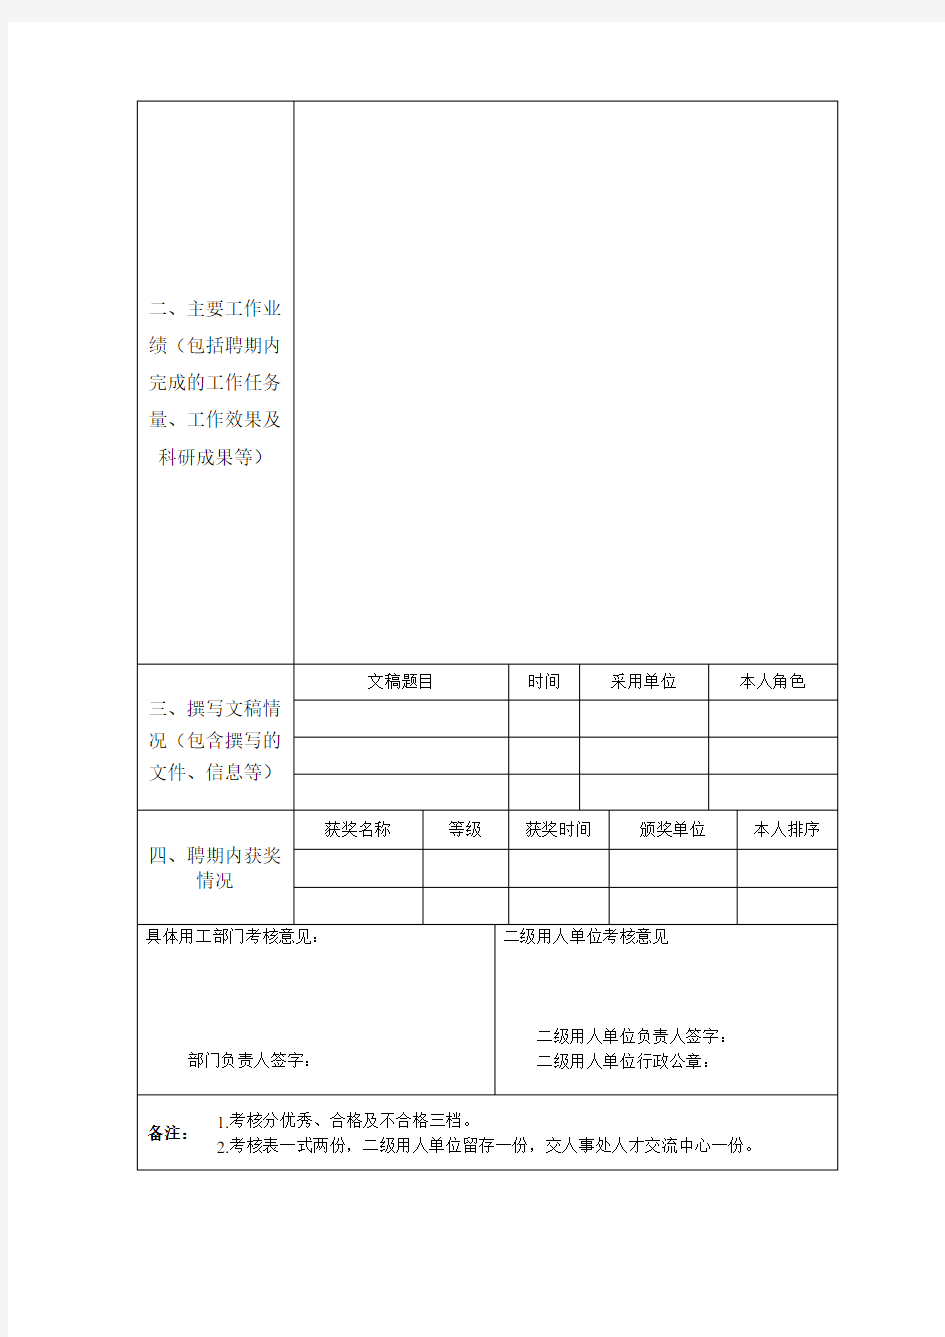 中南大学非事业编制人员聘期考核表